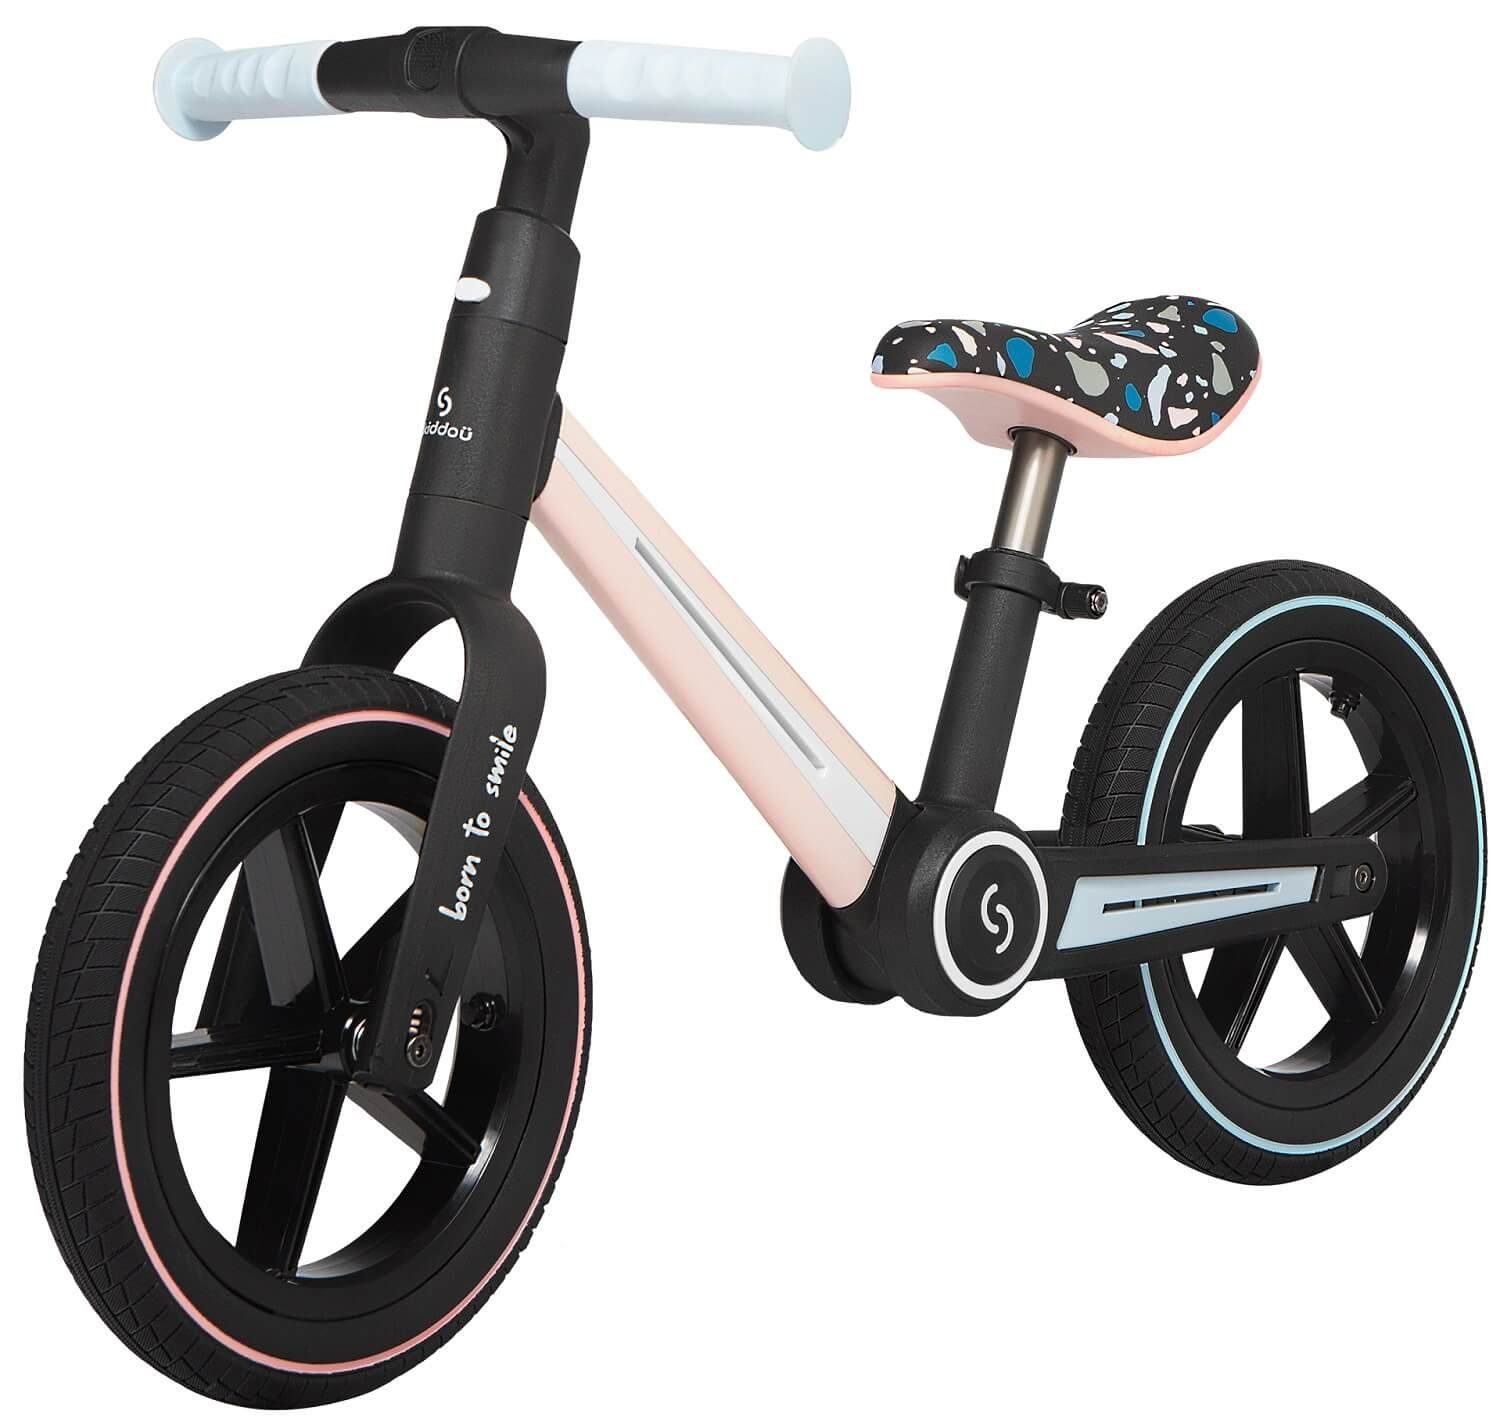 Skiddoü Laufrad Ronny faltbares Laufrad für Kinder bis 30 kg verstellbar in 3 Farben 12 Zoll, inkl. Malbuch rosa